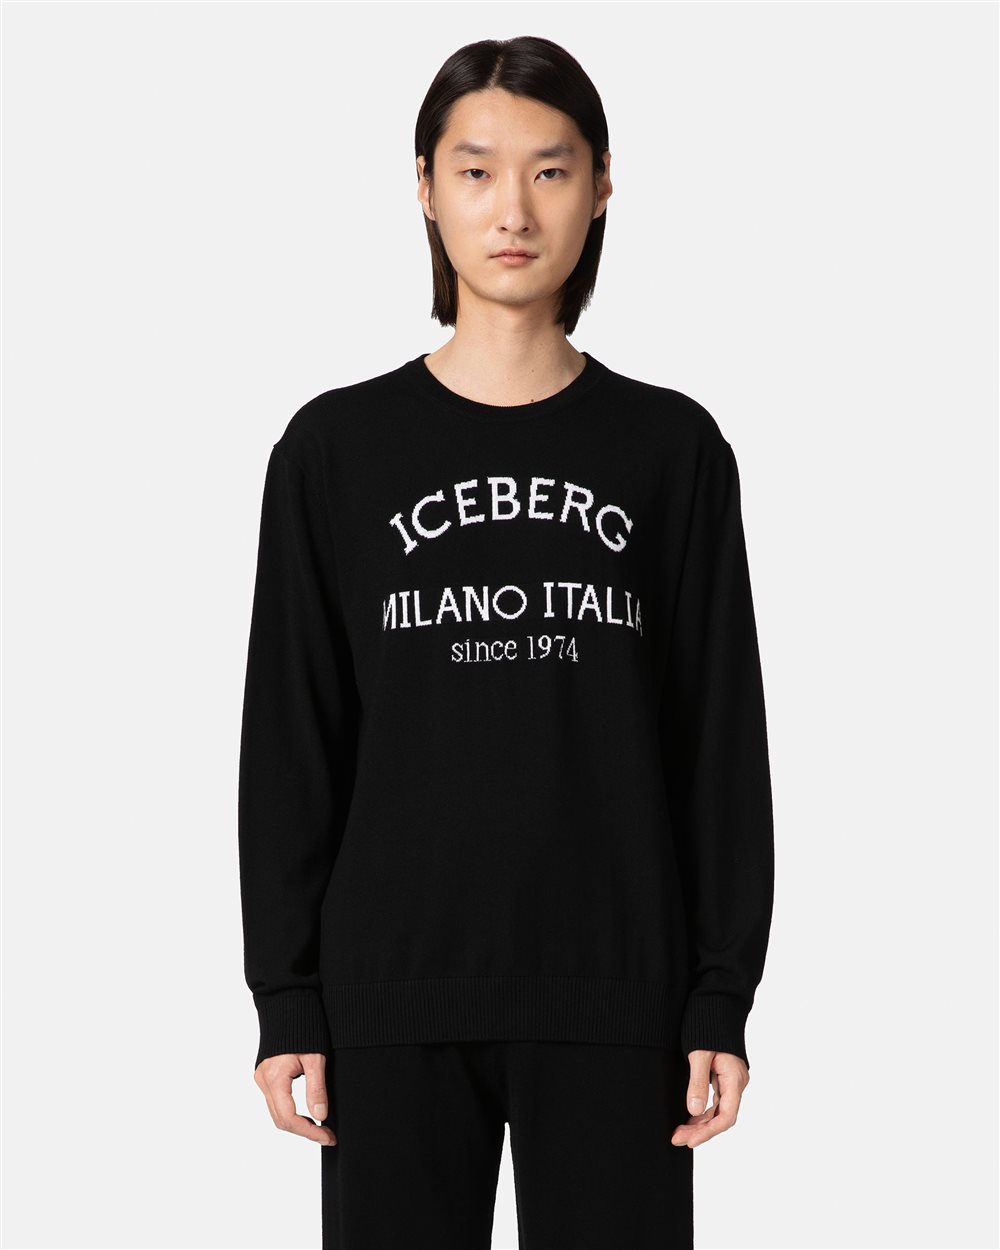 Black jumper with heritage logo - Iceberg - Official Website